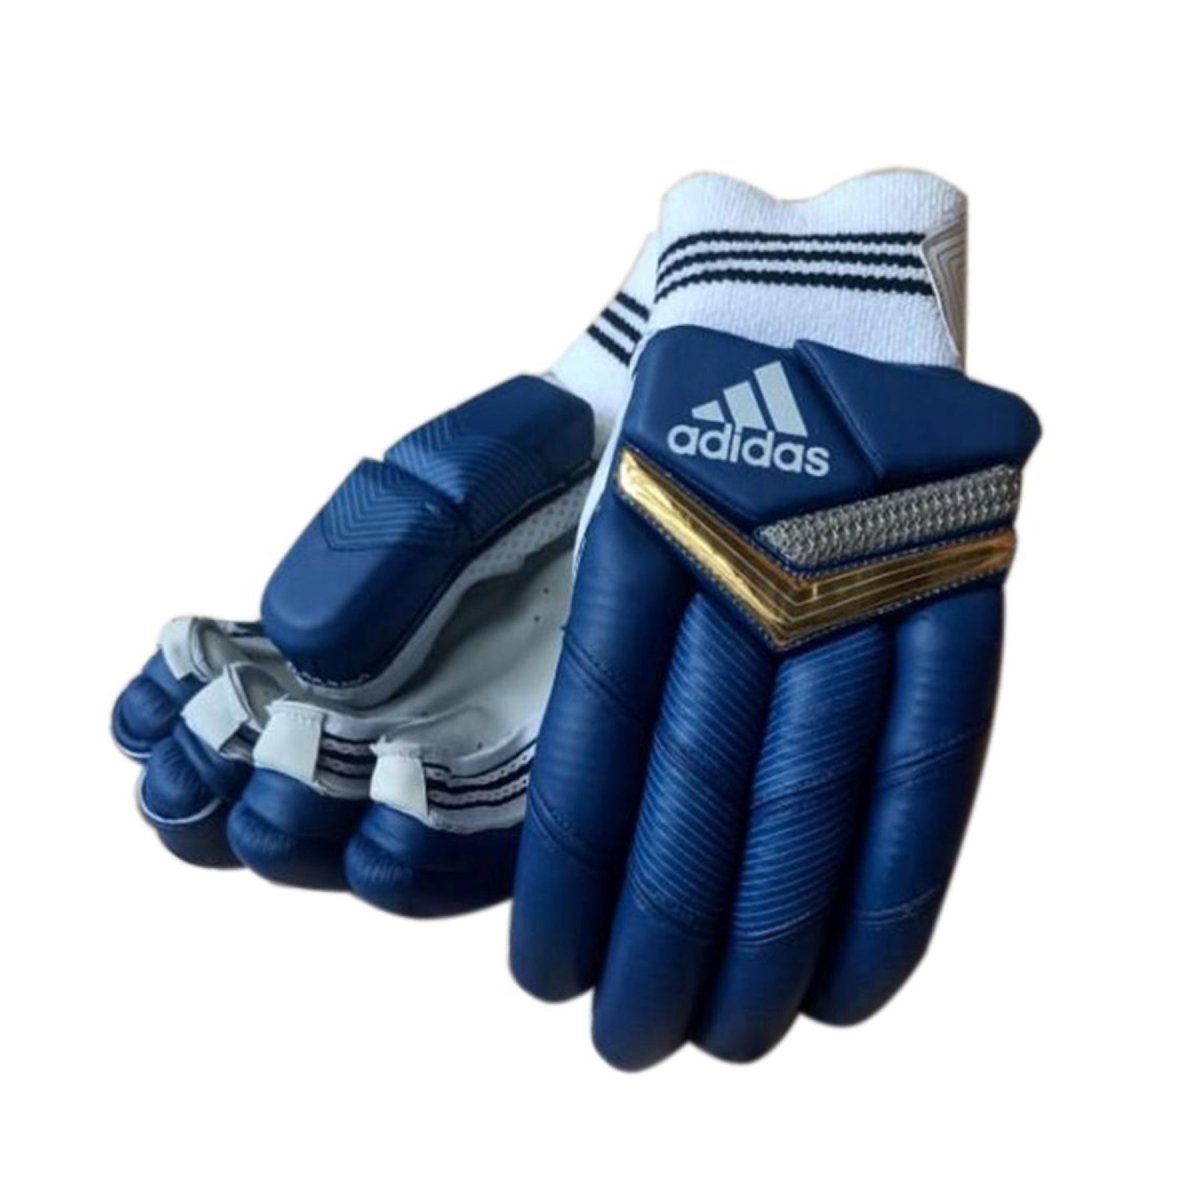 Adidas XT 2.0 Coloured Cricket Batting Gloves - Acrux Sports